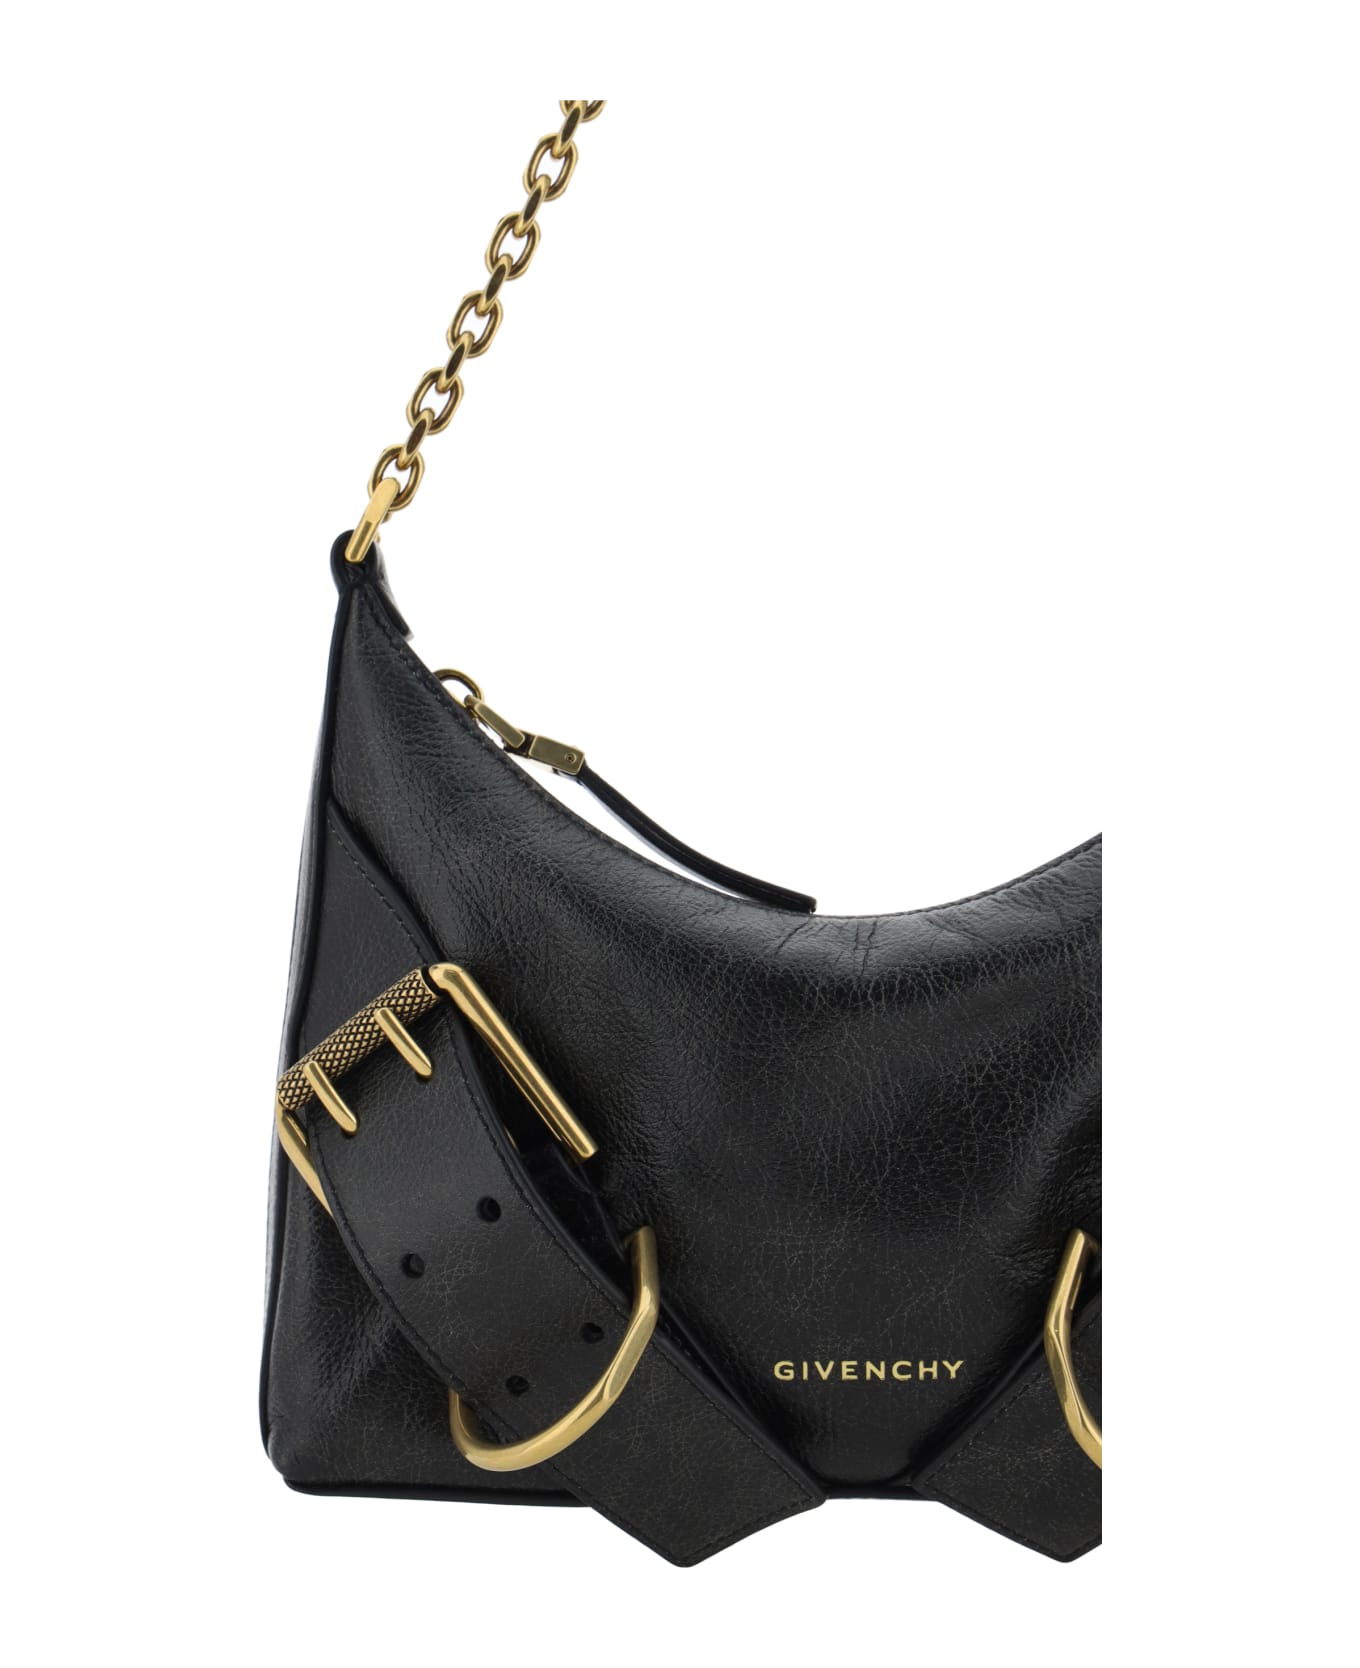 Givenchy Voyou Leather Shoulder Bag - black